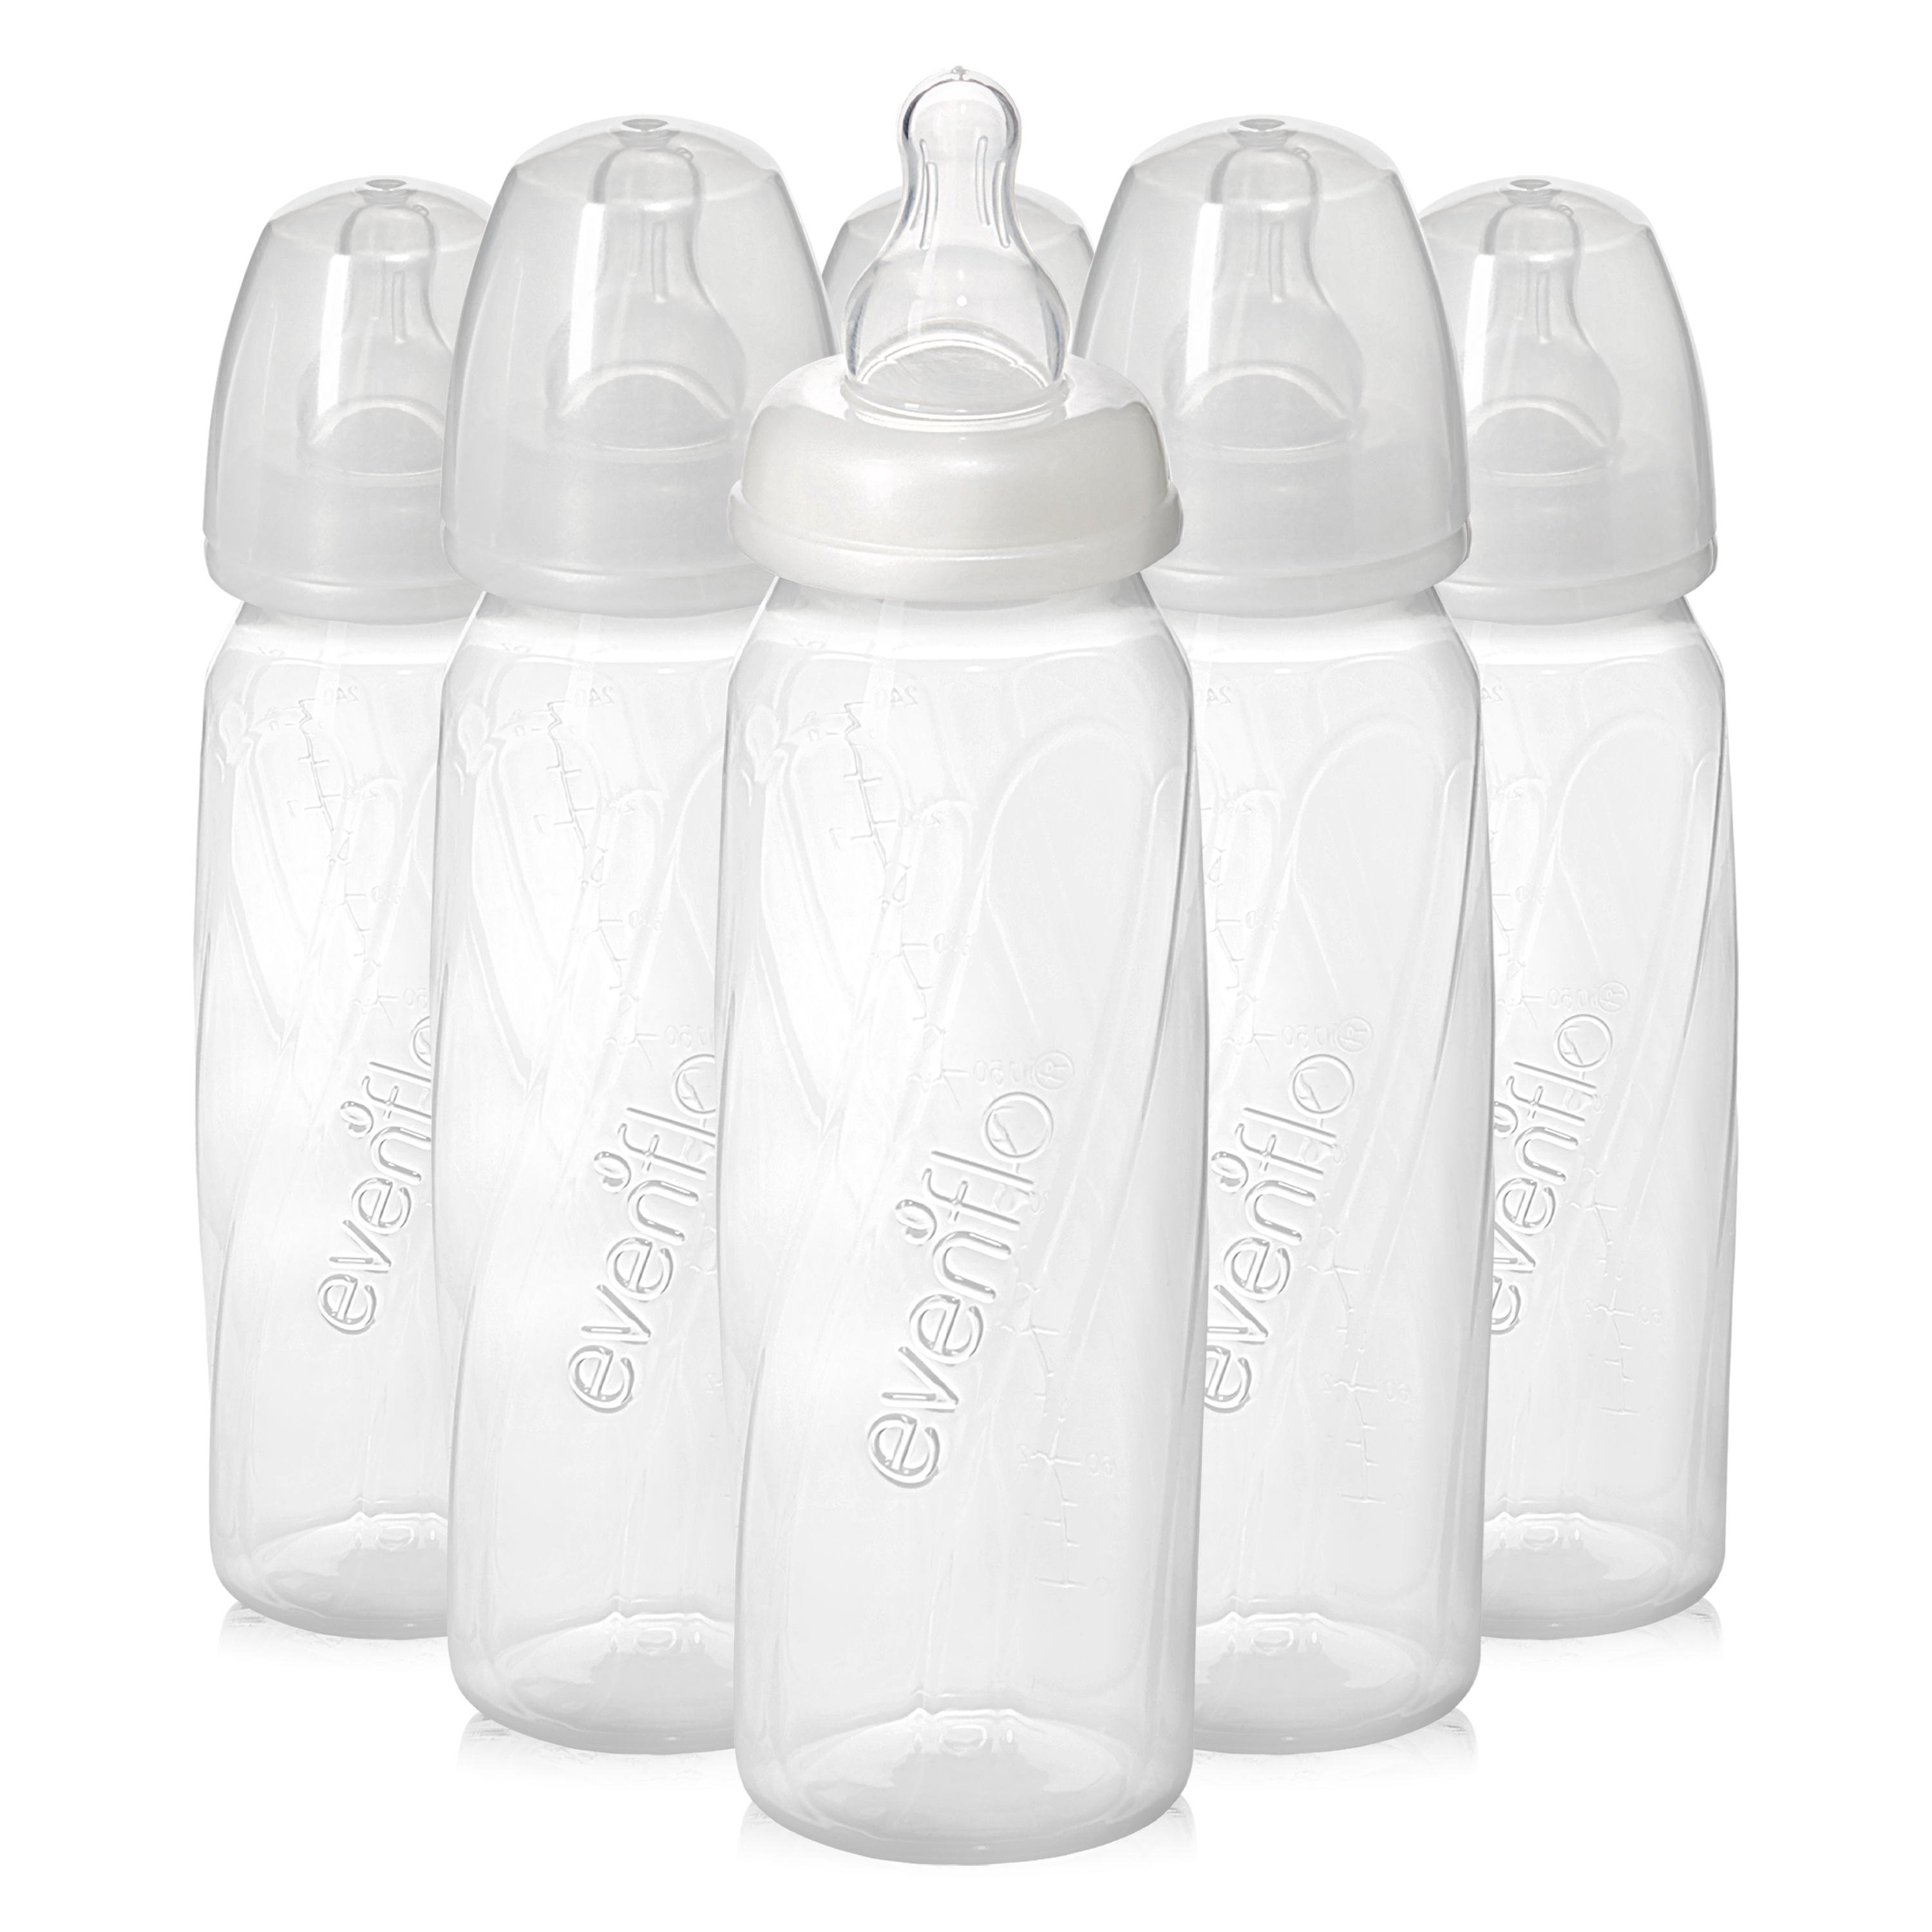 Evenflo Feeding Glass Premium Bottles for Baby